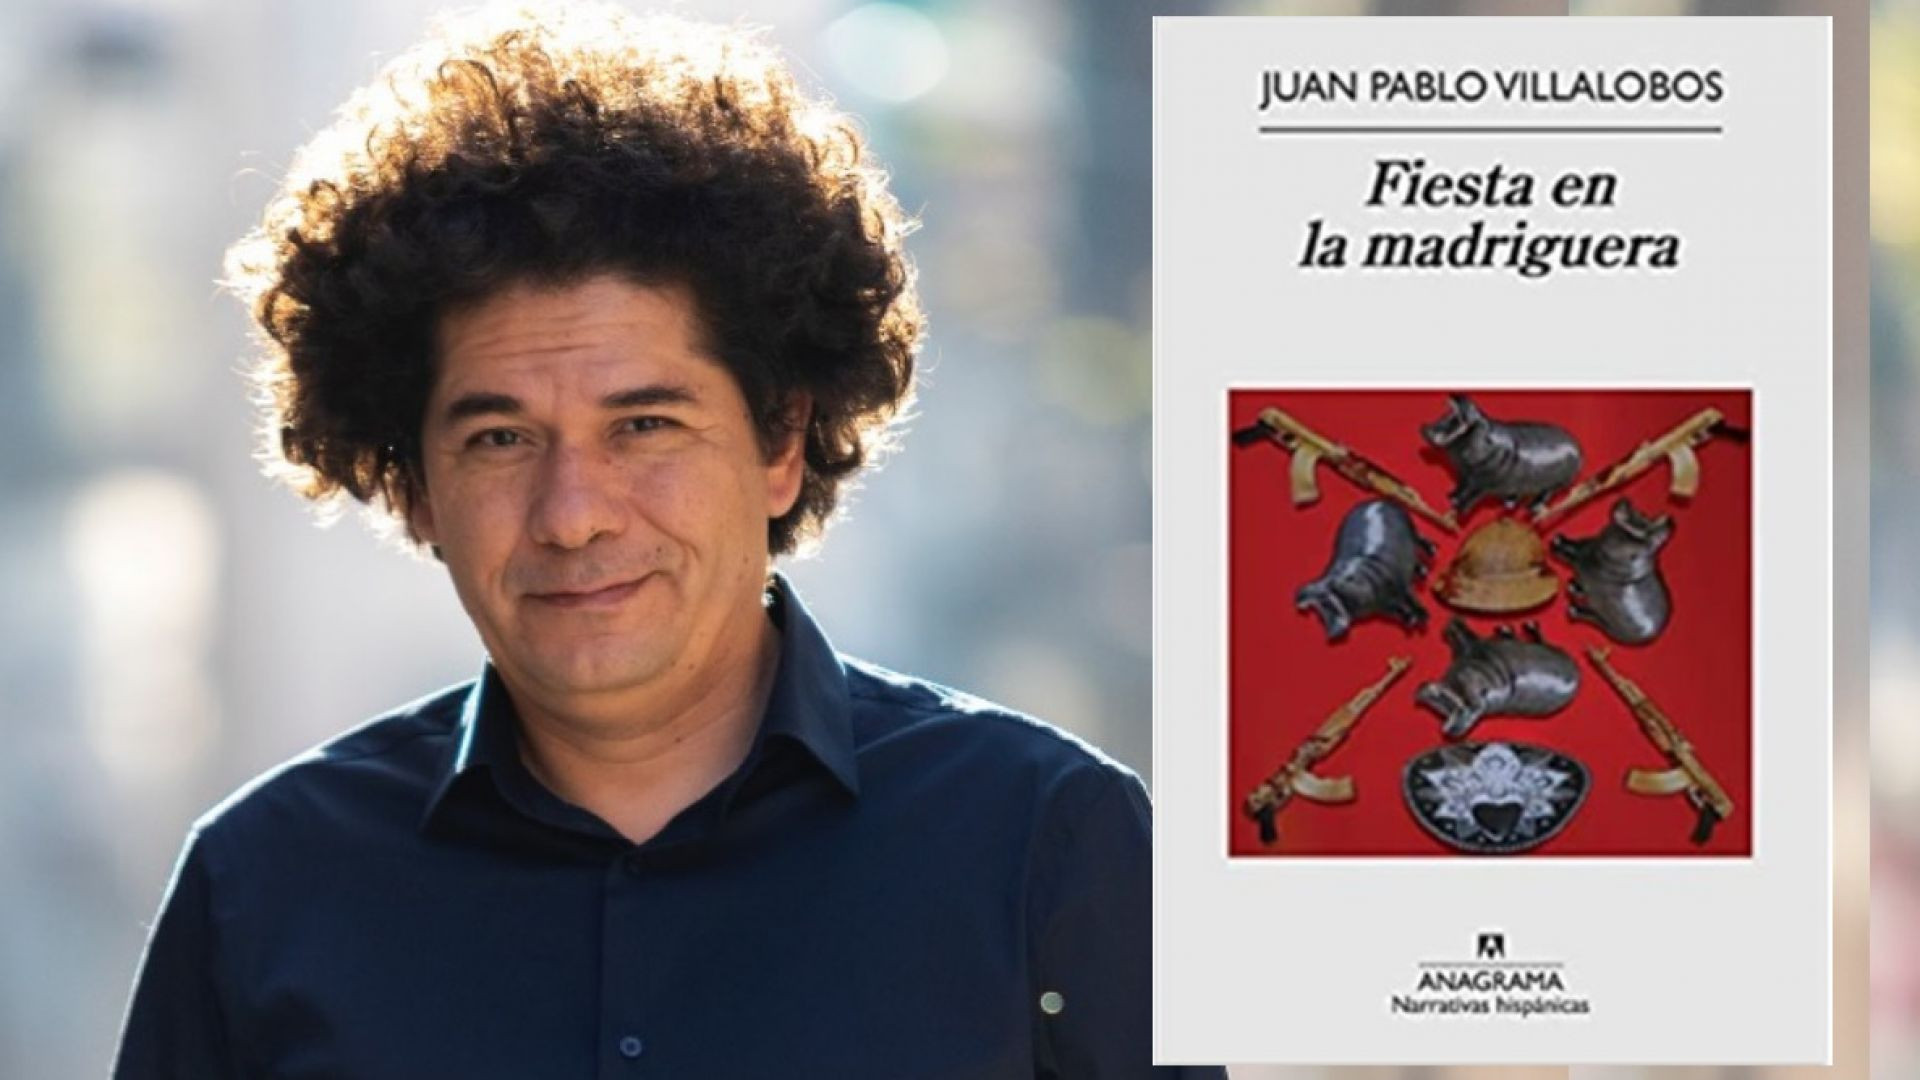 "Fiesta en la madriguera": un libro de Juan Pablo Villalobos recomendado para este finde